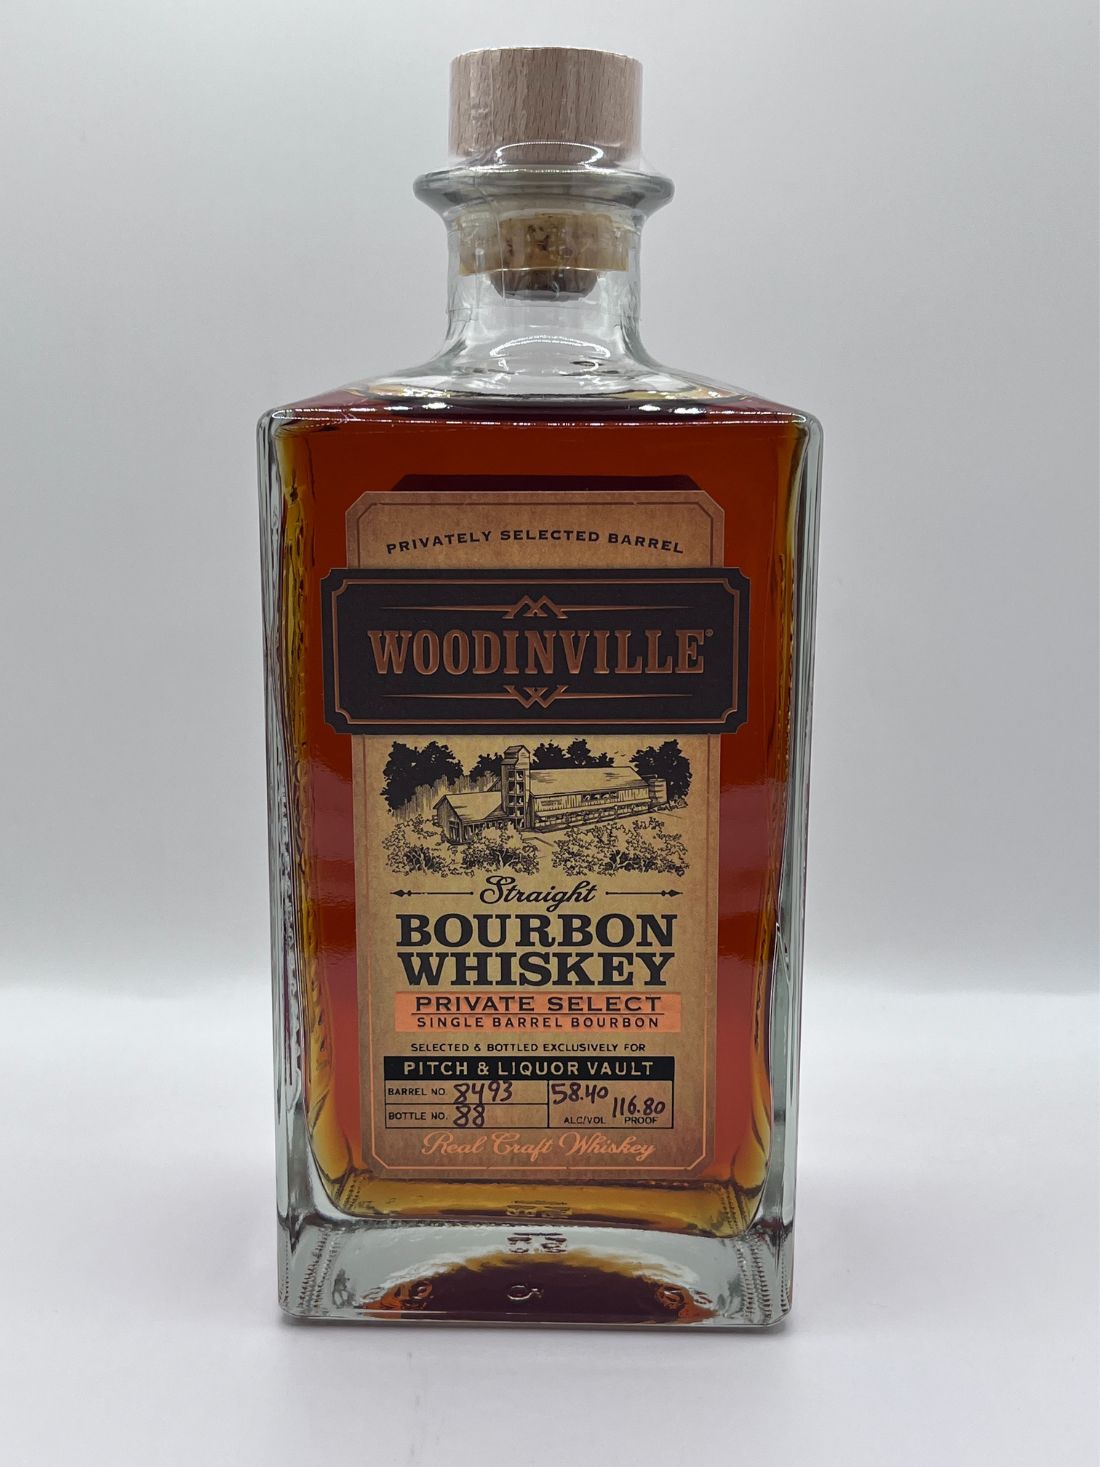 Pitch/Liqour Vault Woodinville Bourbon